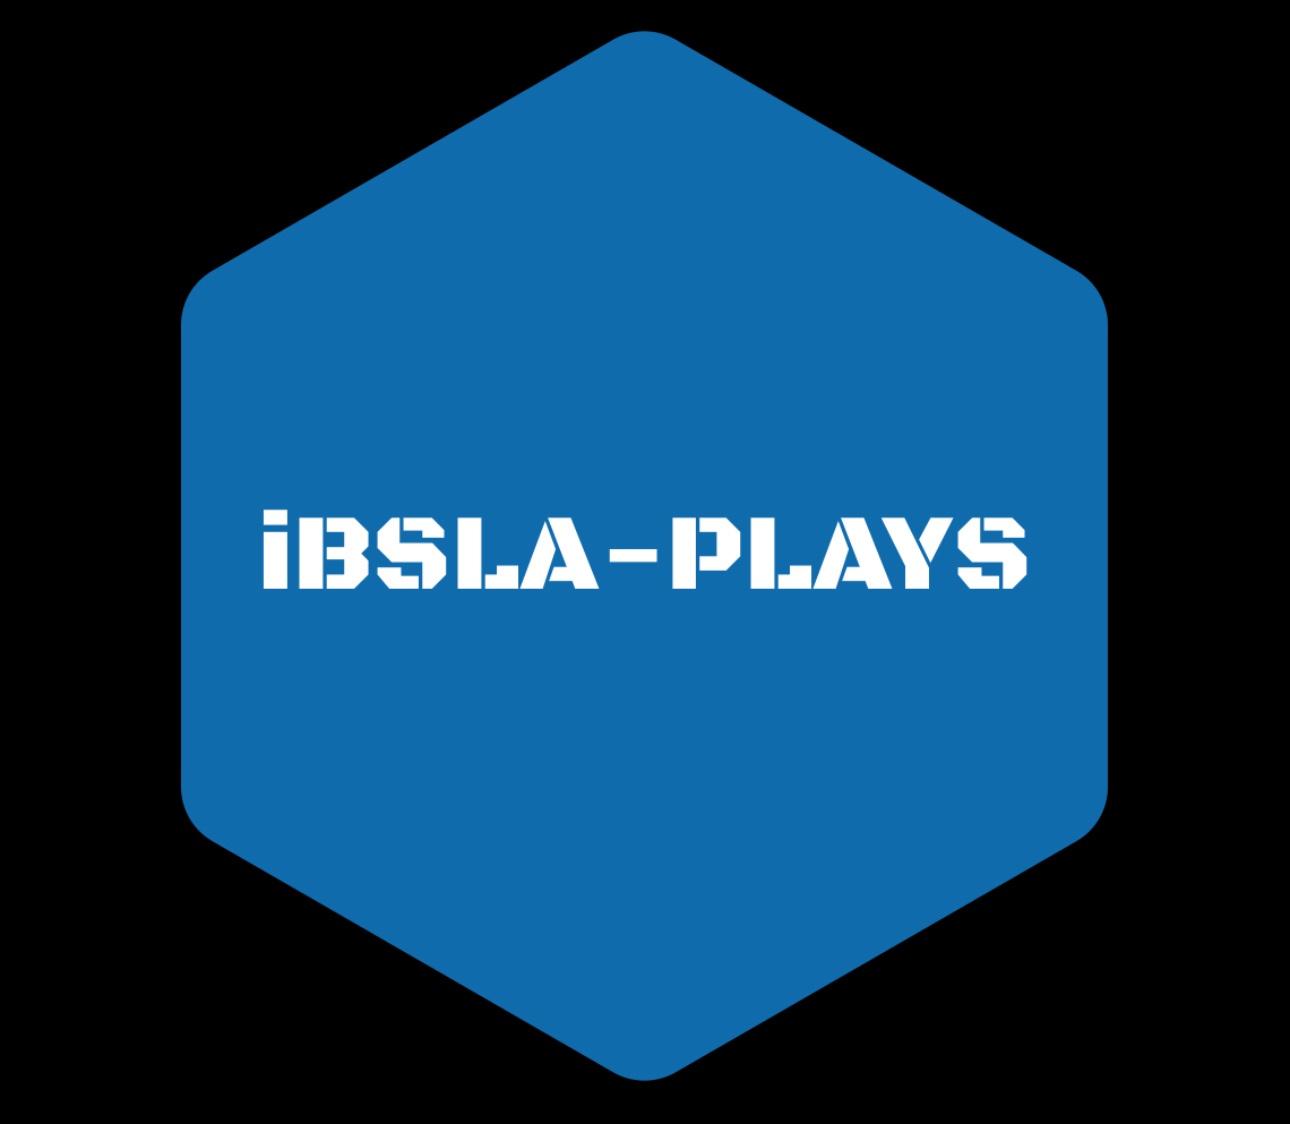 iBSLA-PLAYS LOGO